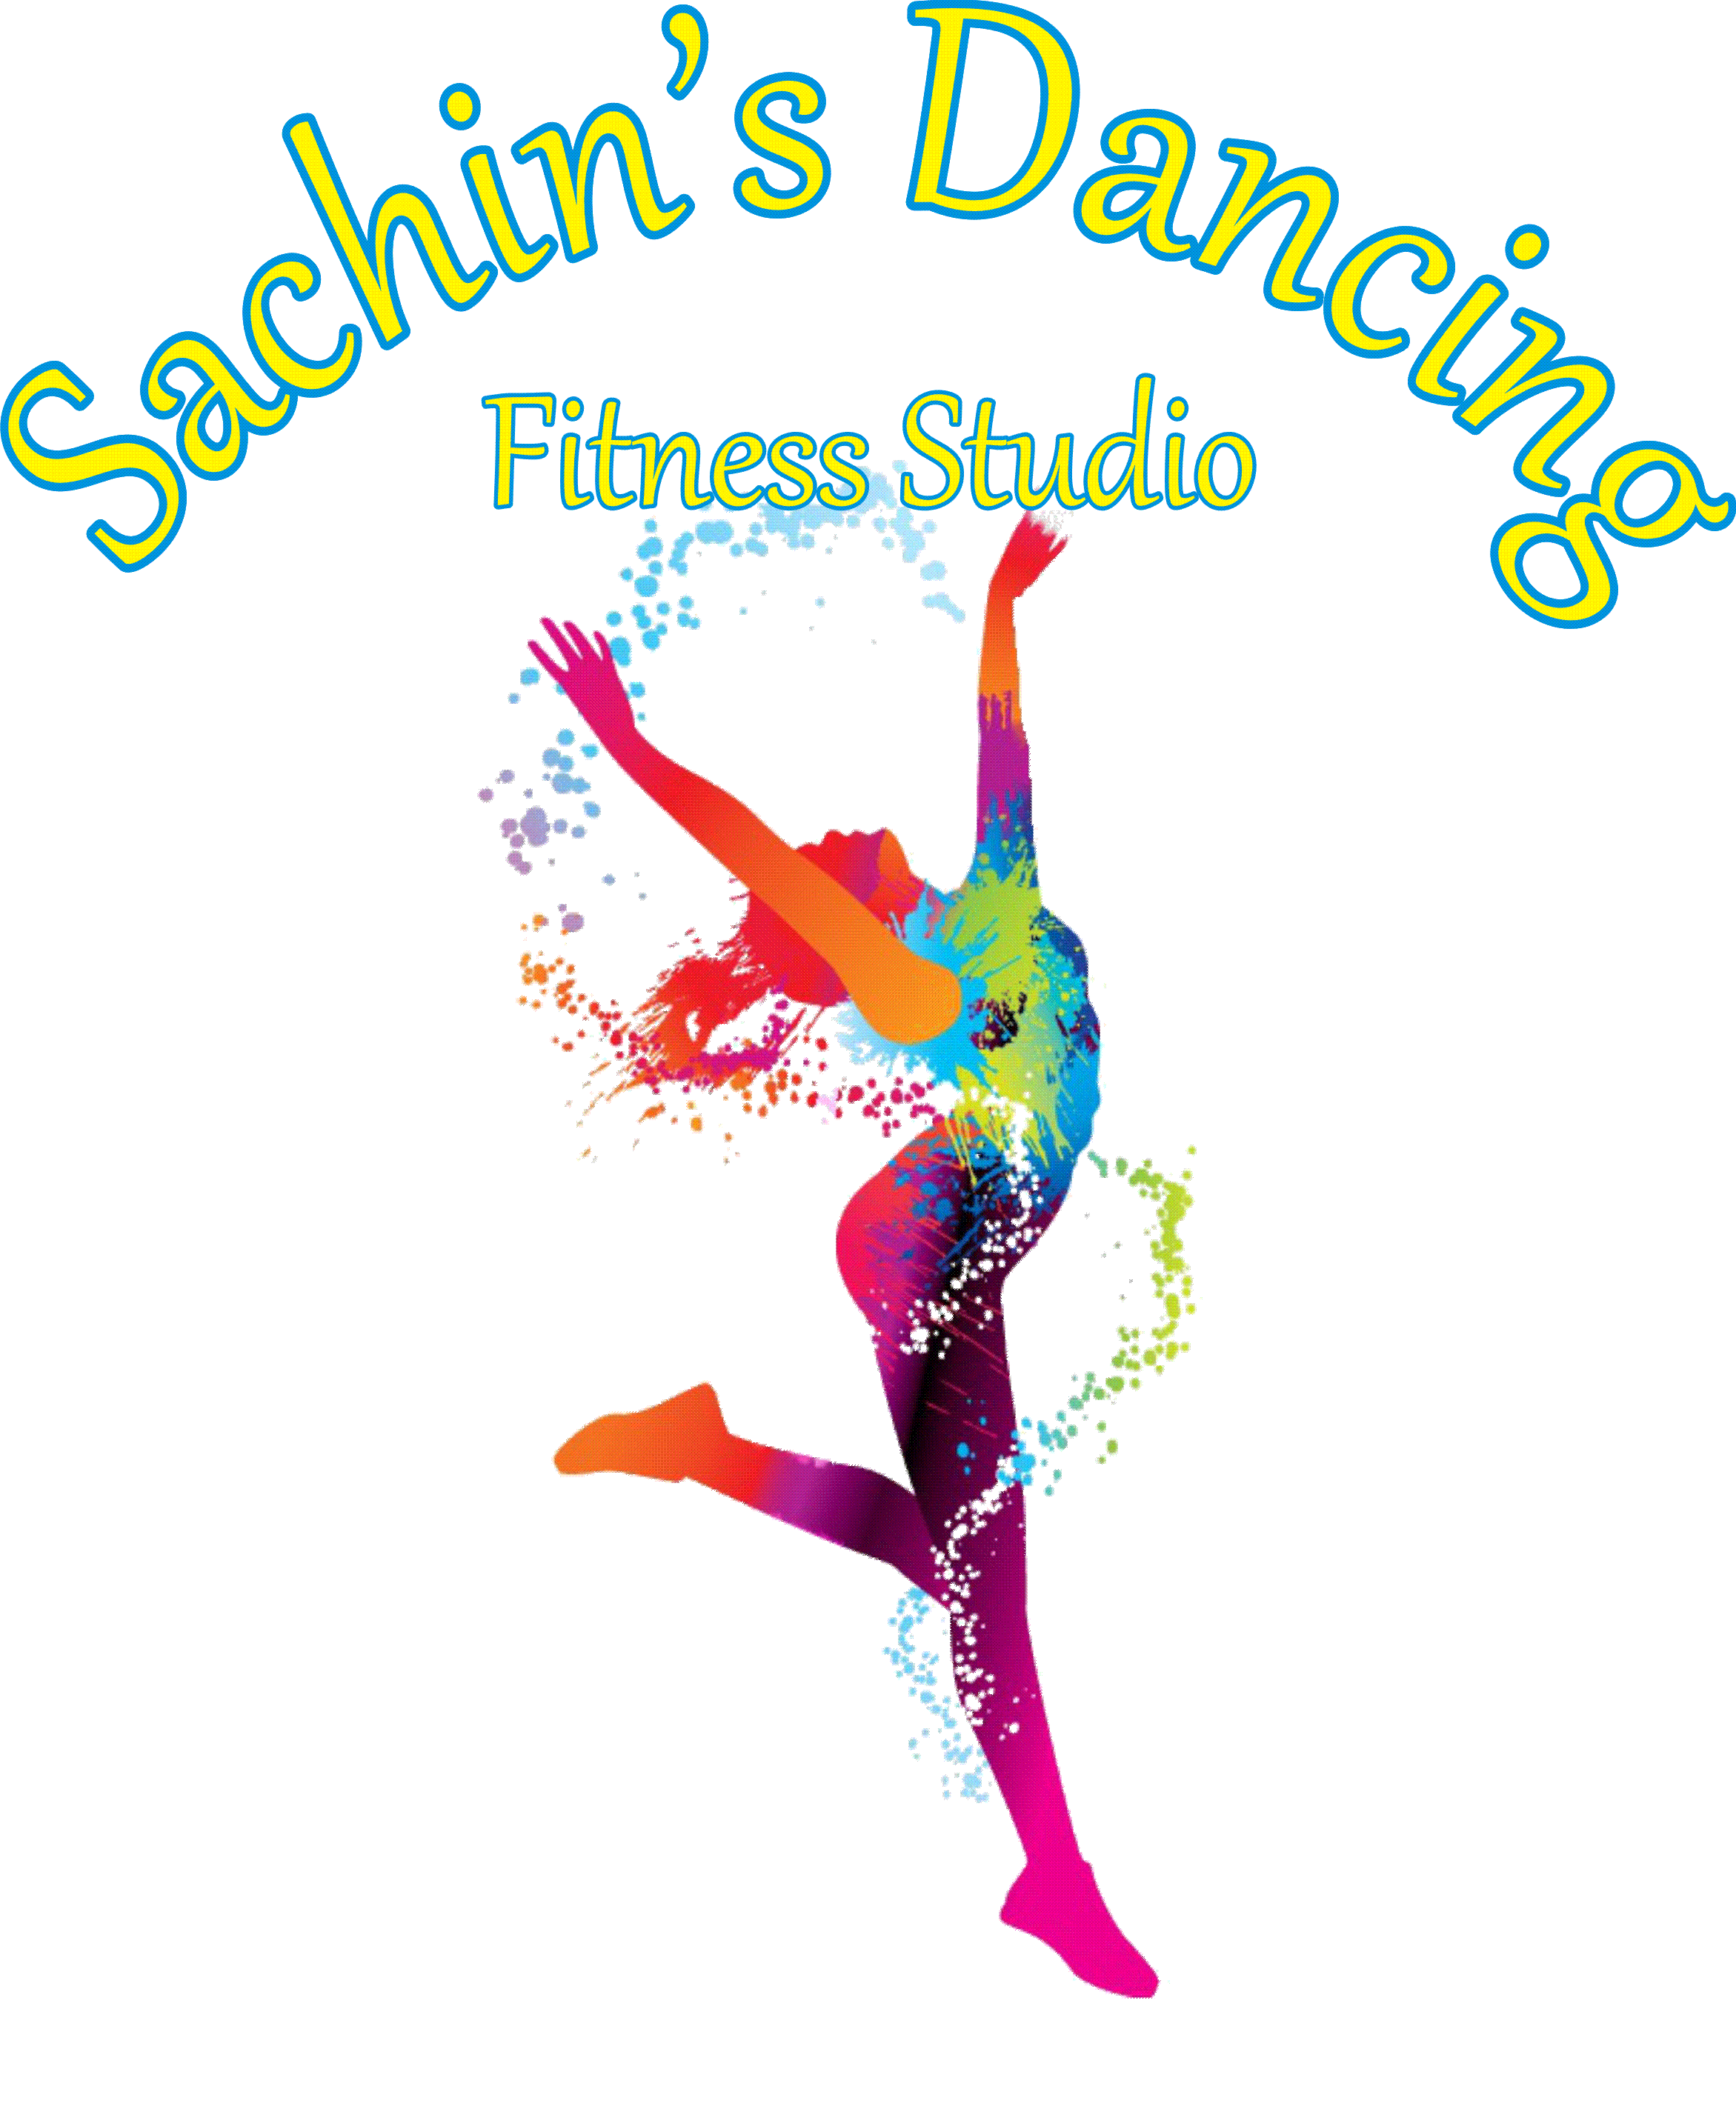 Sachin's Dancing Fitness Studio